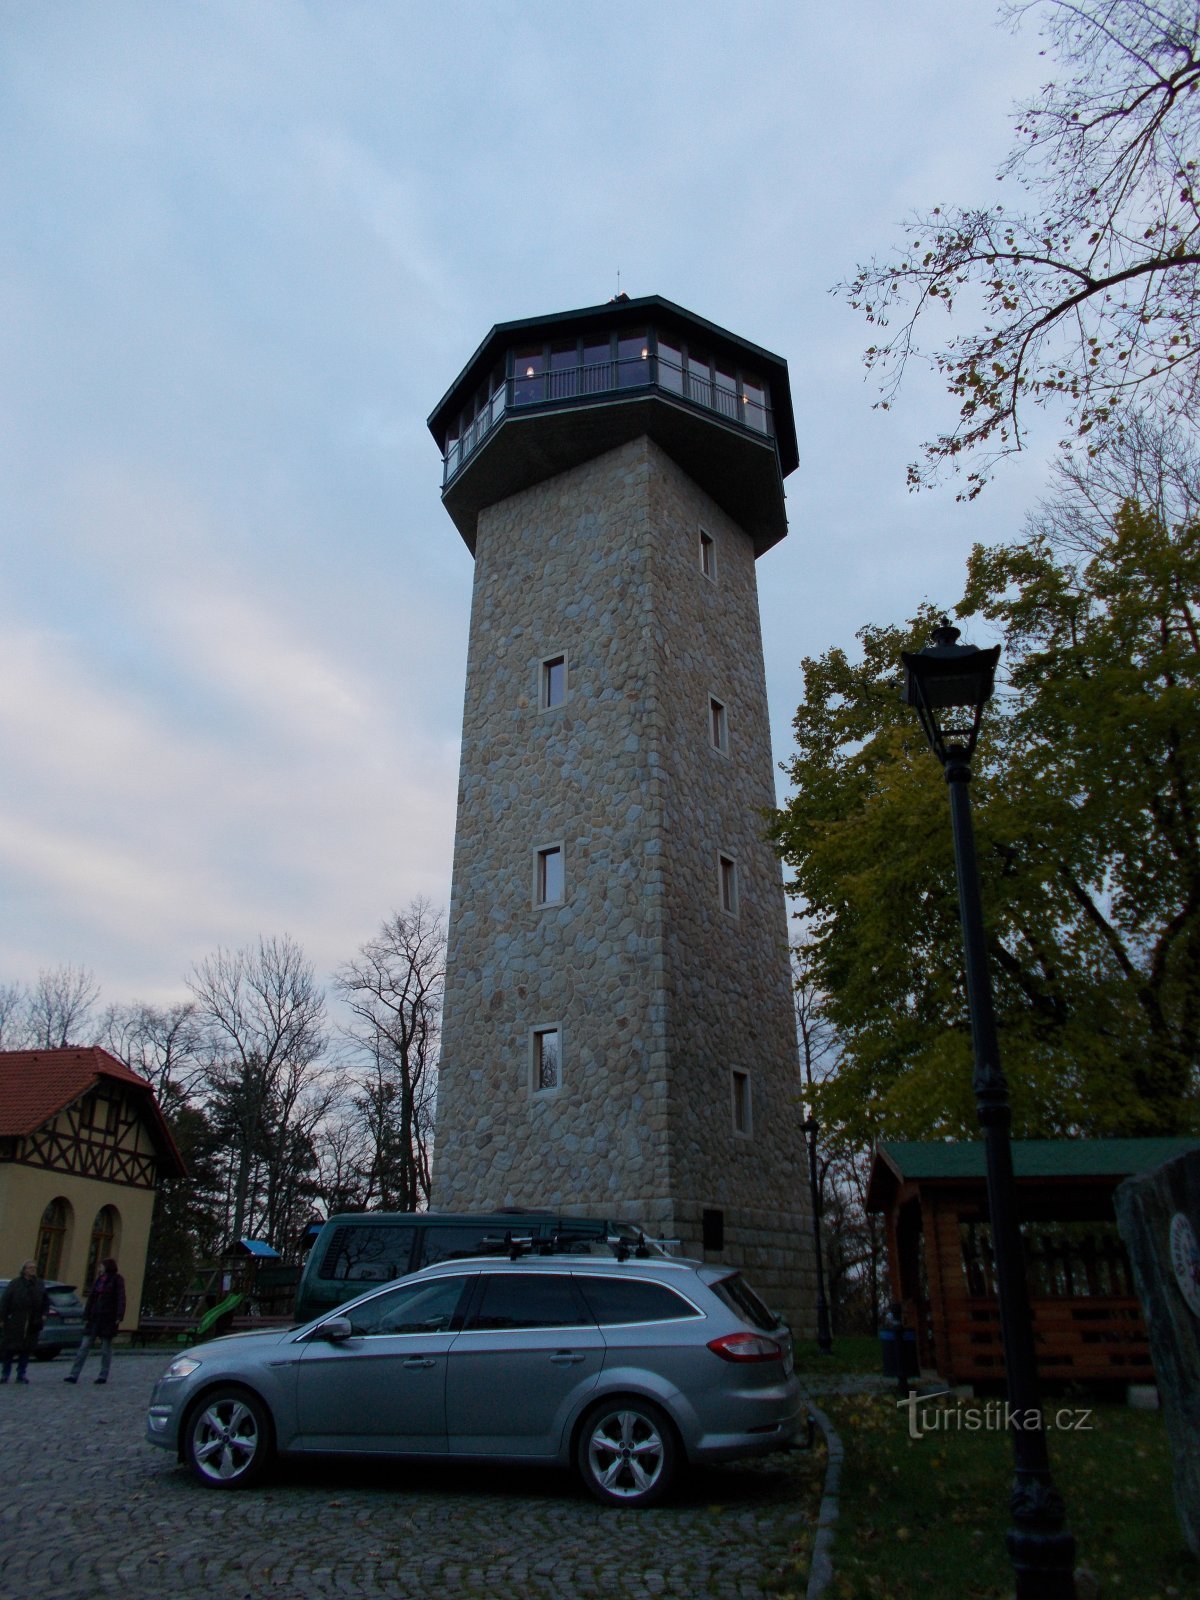 Torre mirador de Havířská bouda